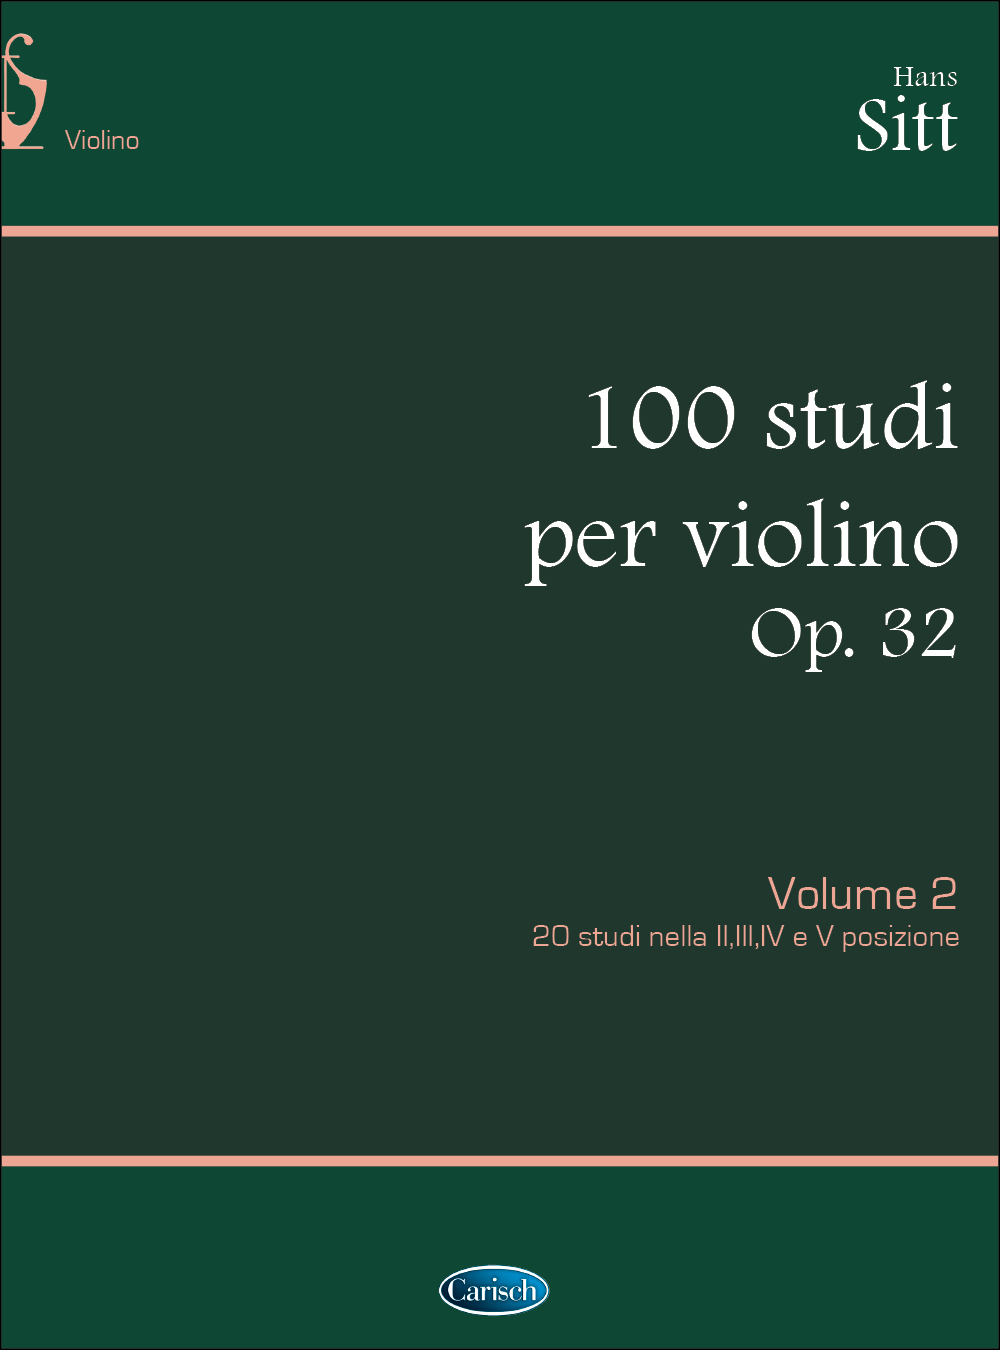 Hans Sitt: 100 Studi Op. 32 per Violino - Volume 2: Violin: Instrumental Tutor